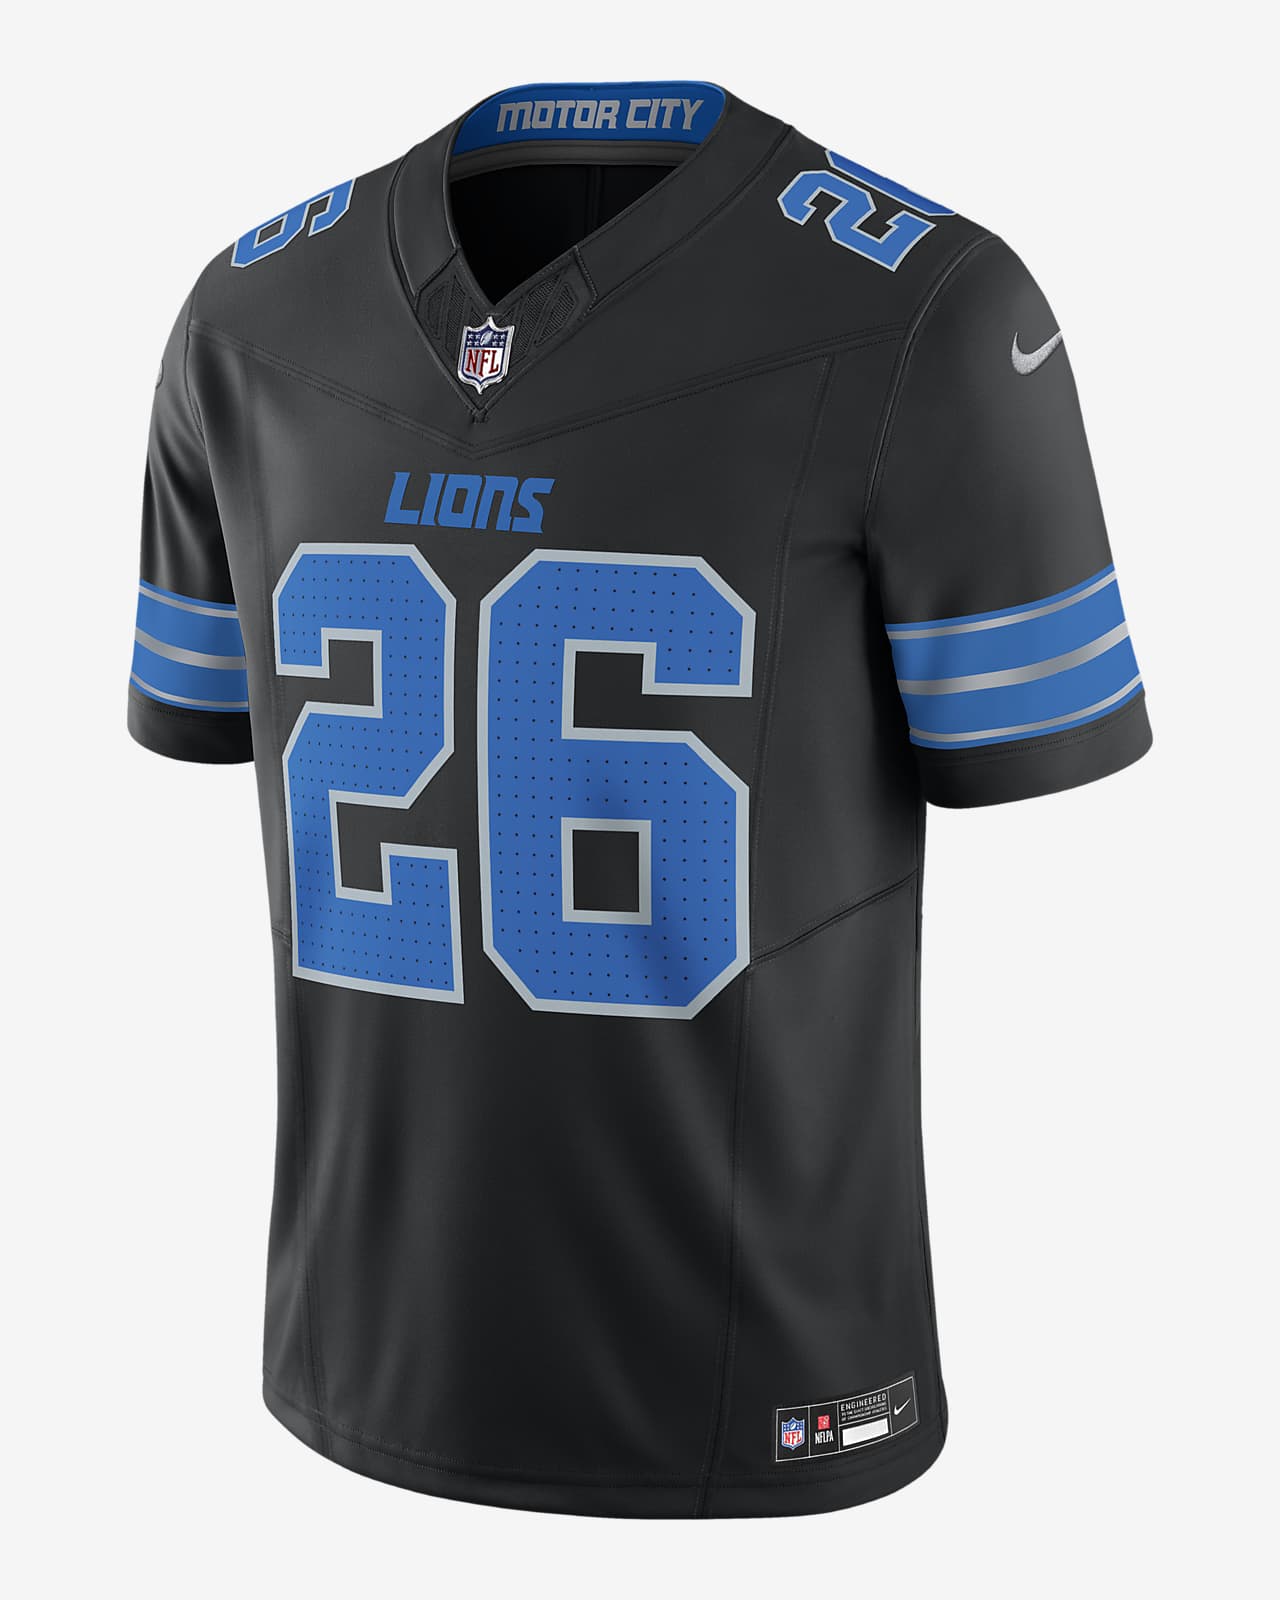 Jersey de fútbol americano Nike Dri-FIT de la NFL Limited para hombre Jahmyr Gibbs Detroit Lions